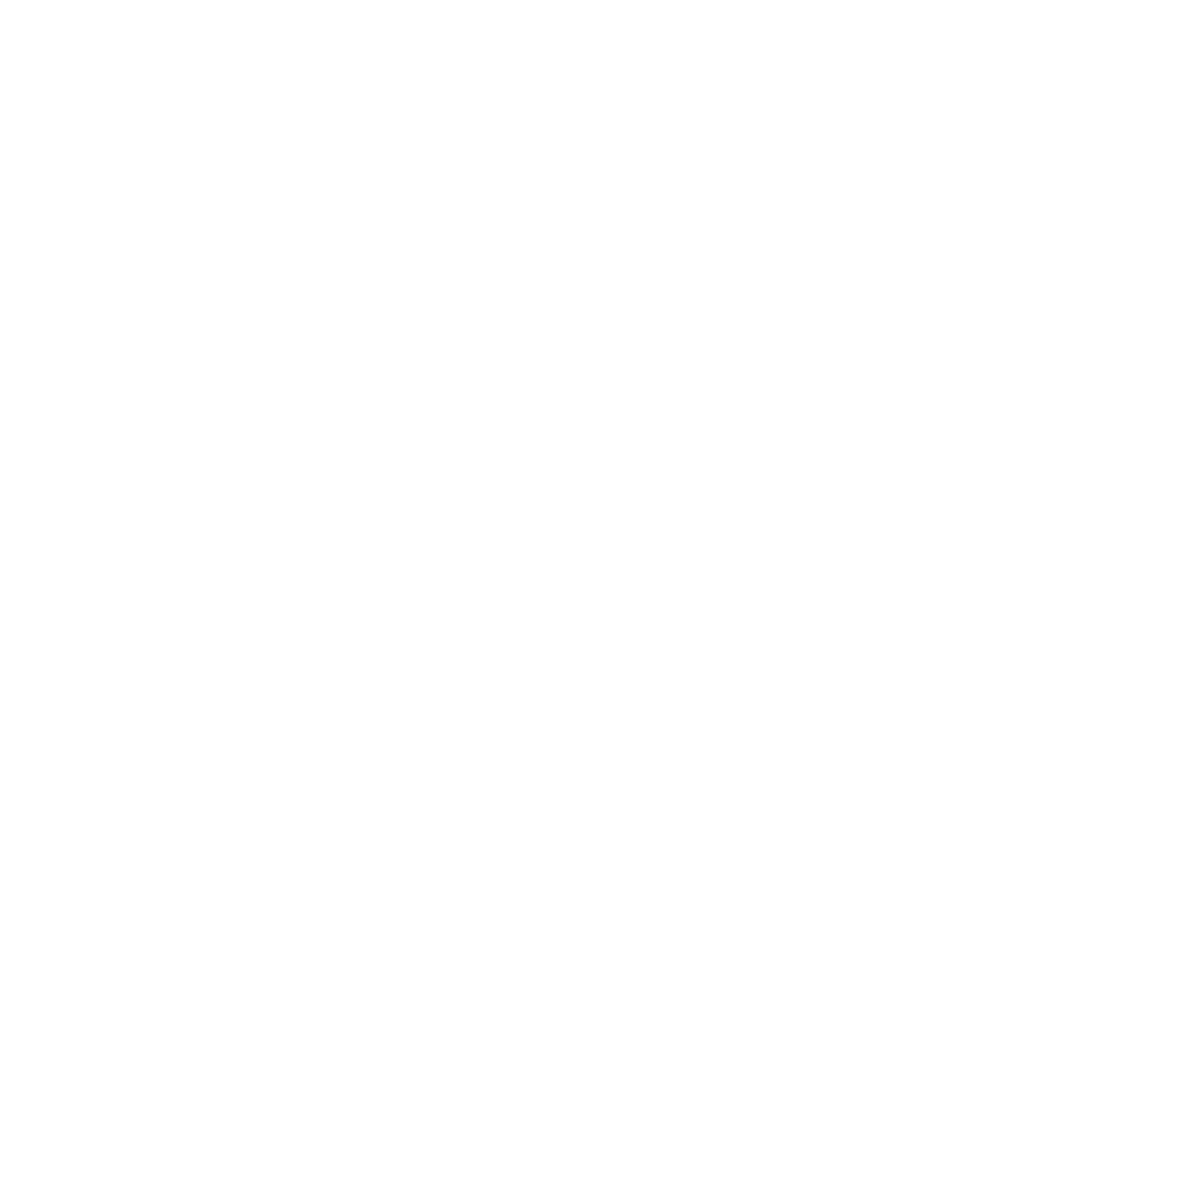 Great Sky Media